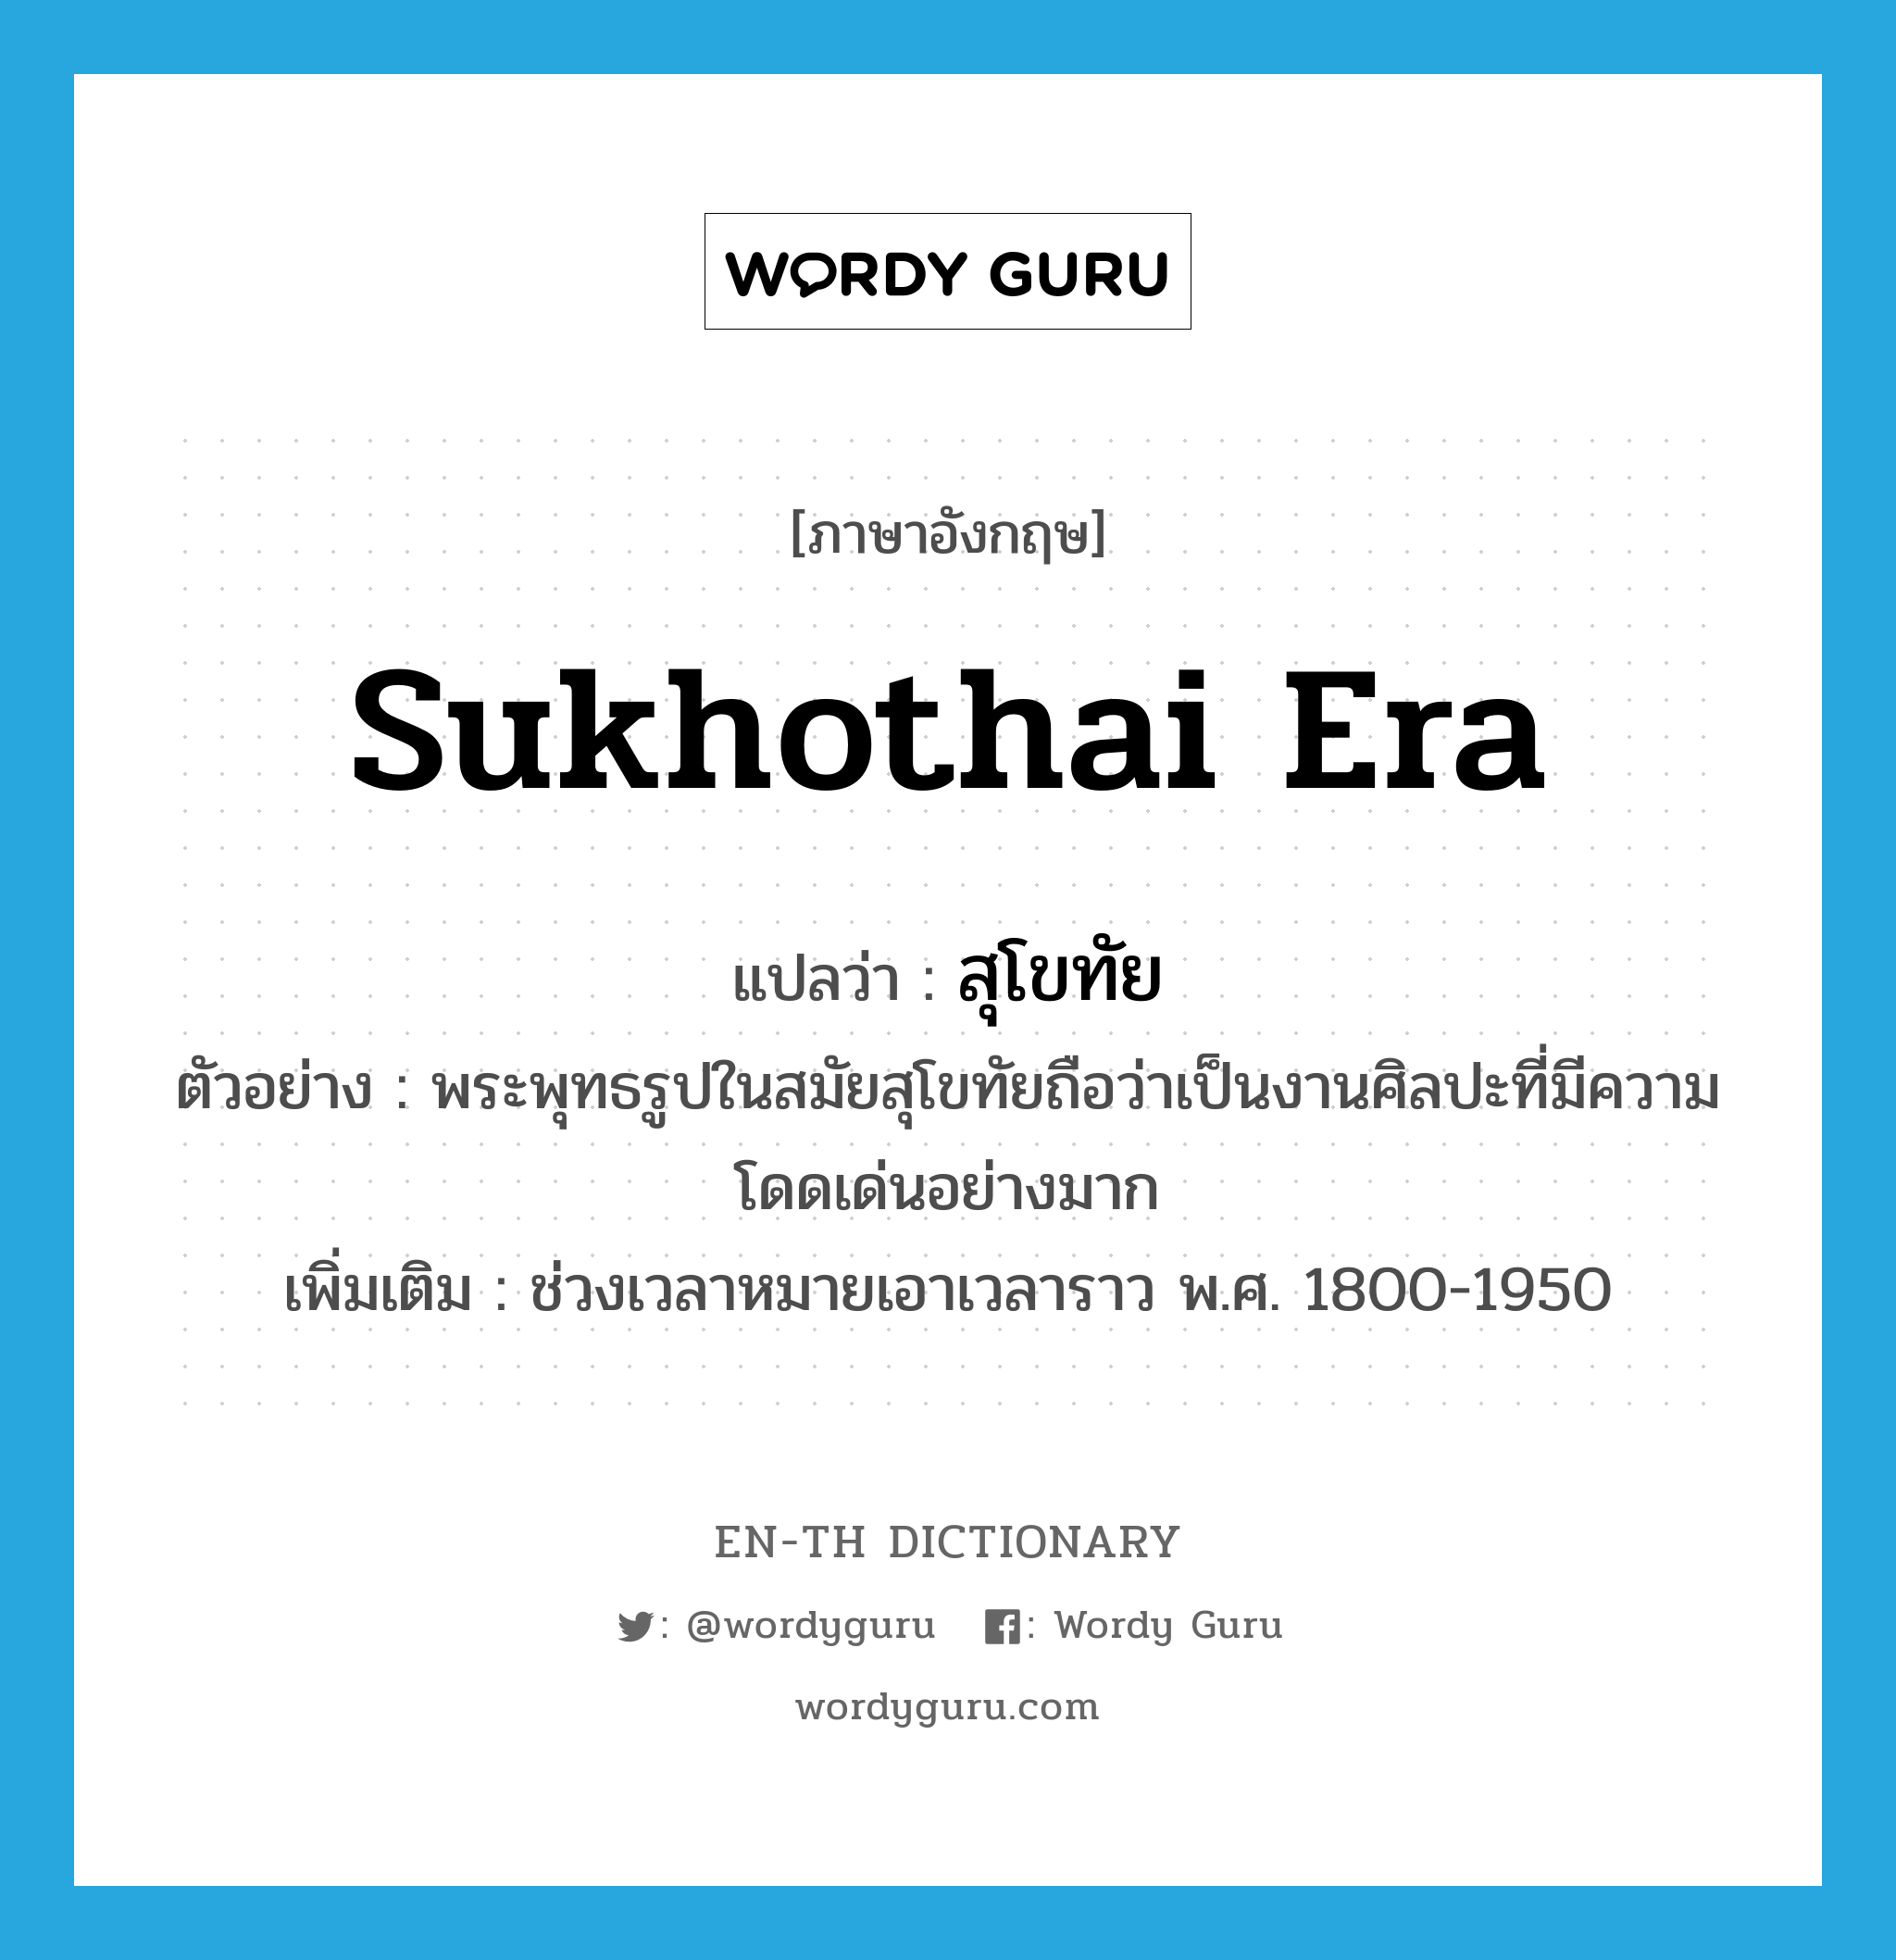 Sukhothai era แปลว่า?, คำศัพท์ภาษาอังกฤษ Sukhothai era แปลว่า สุโขทัย ประเภท N ตัวอย่าง พระพุทธรูปในสมัยสุโขทัยถือว่าเป็นงานศิลปะที่มีความโดดเด่นอย่างมาก เพิ่มเติม ช่วงเวลาหมายเอาเวลาราว พ.ศ. 1800-1950 หมวด N